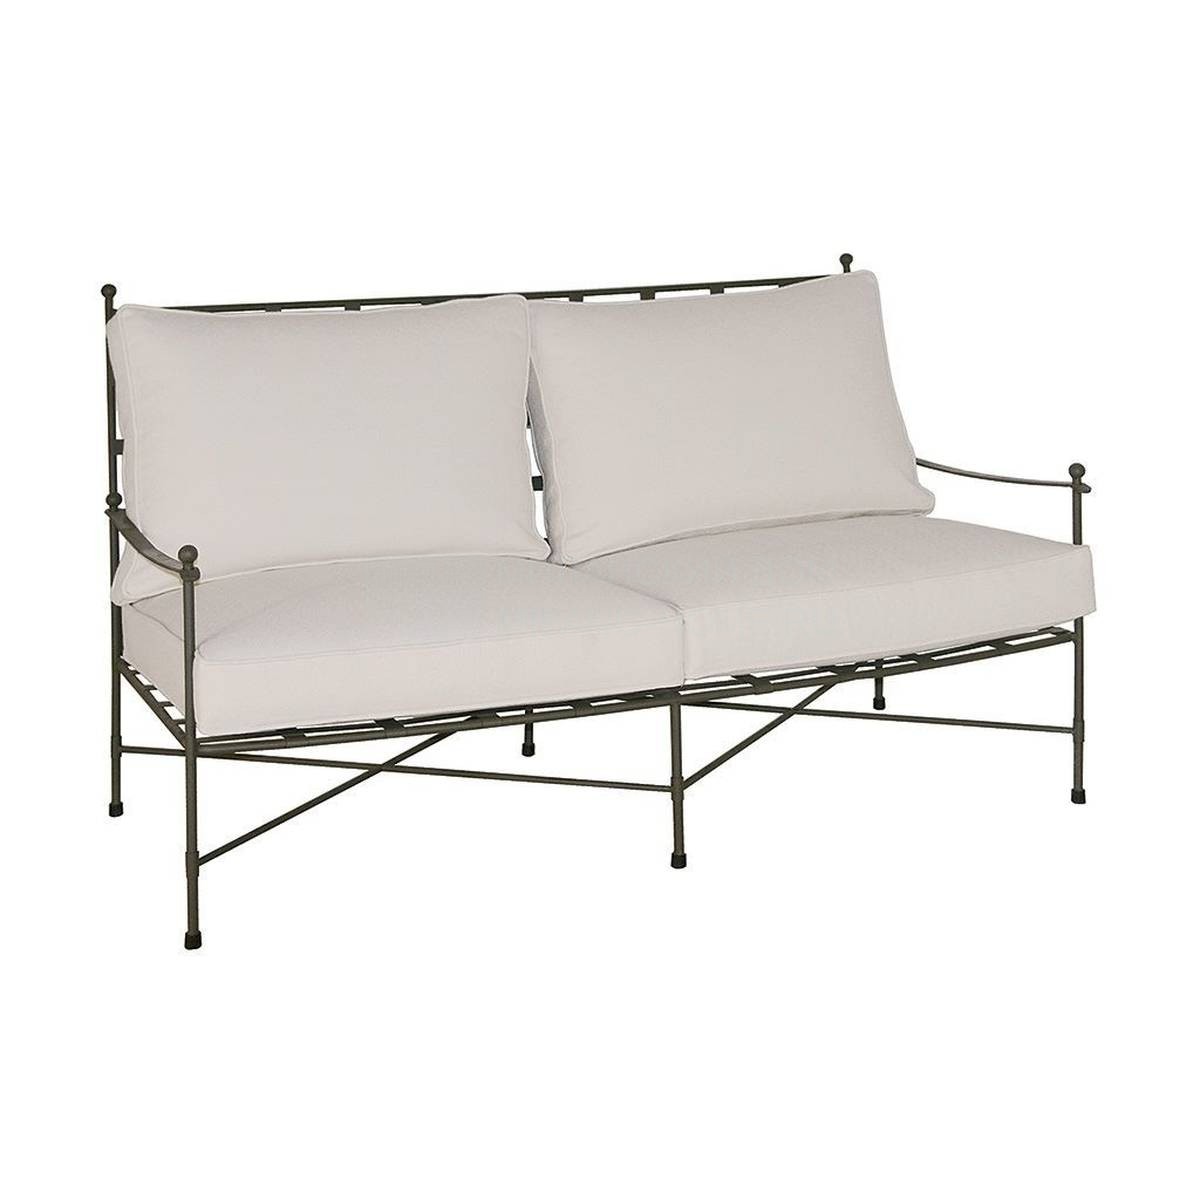 Прямой диван H-30320 sofa из Испании фабрики GUADARTE